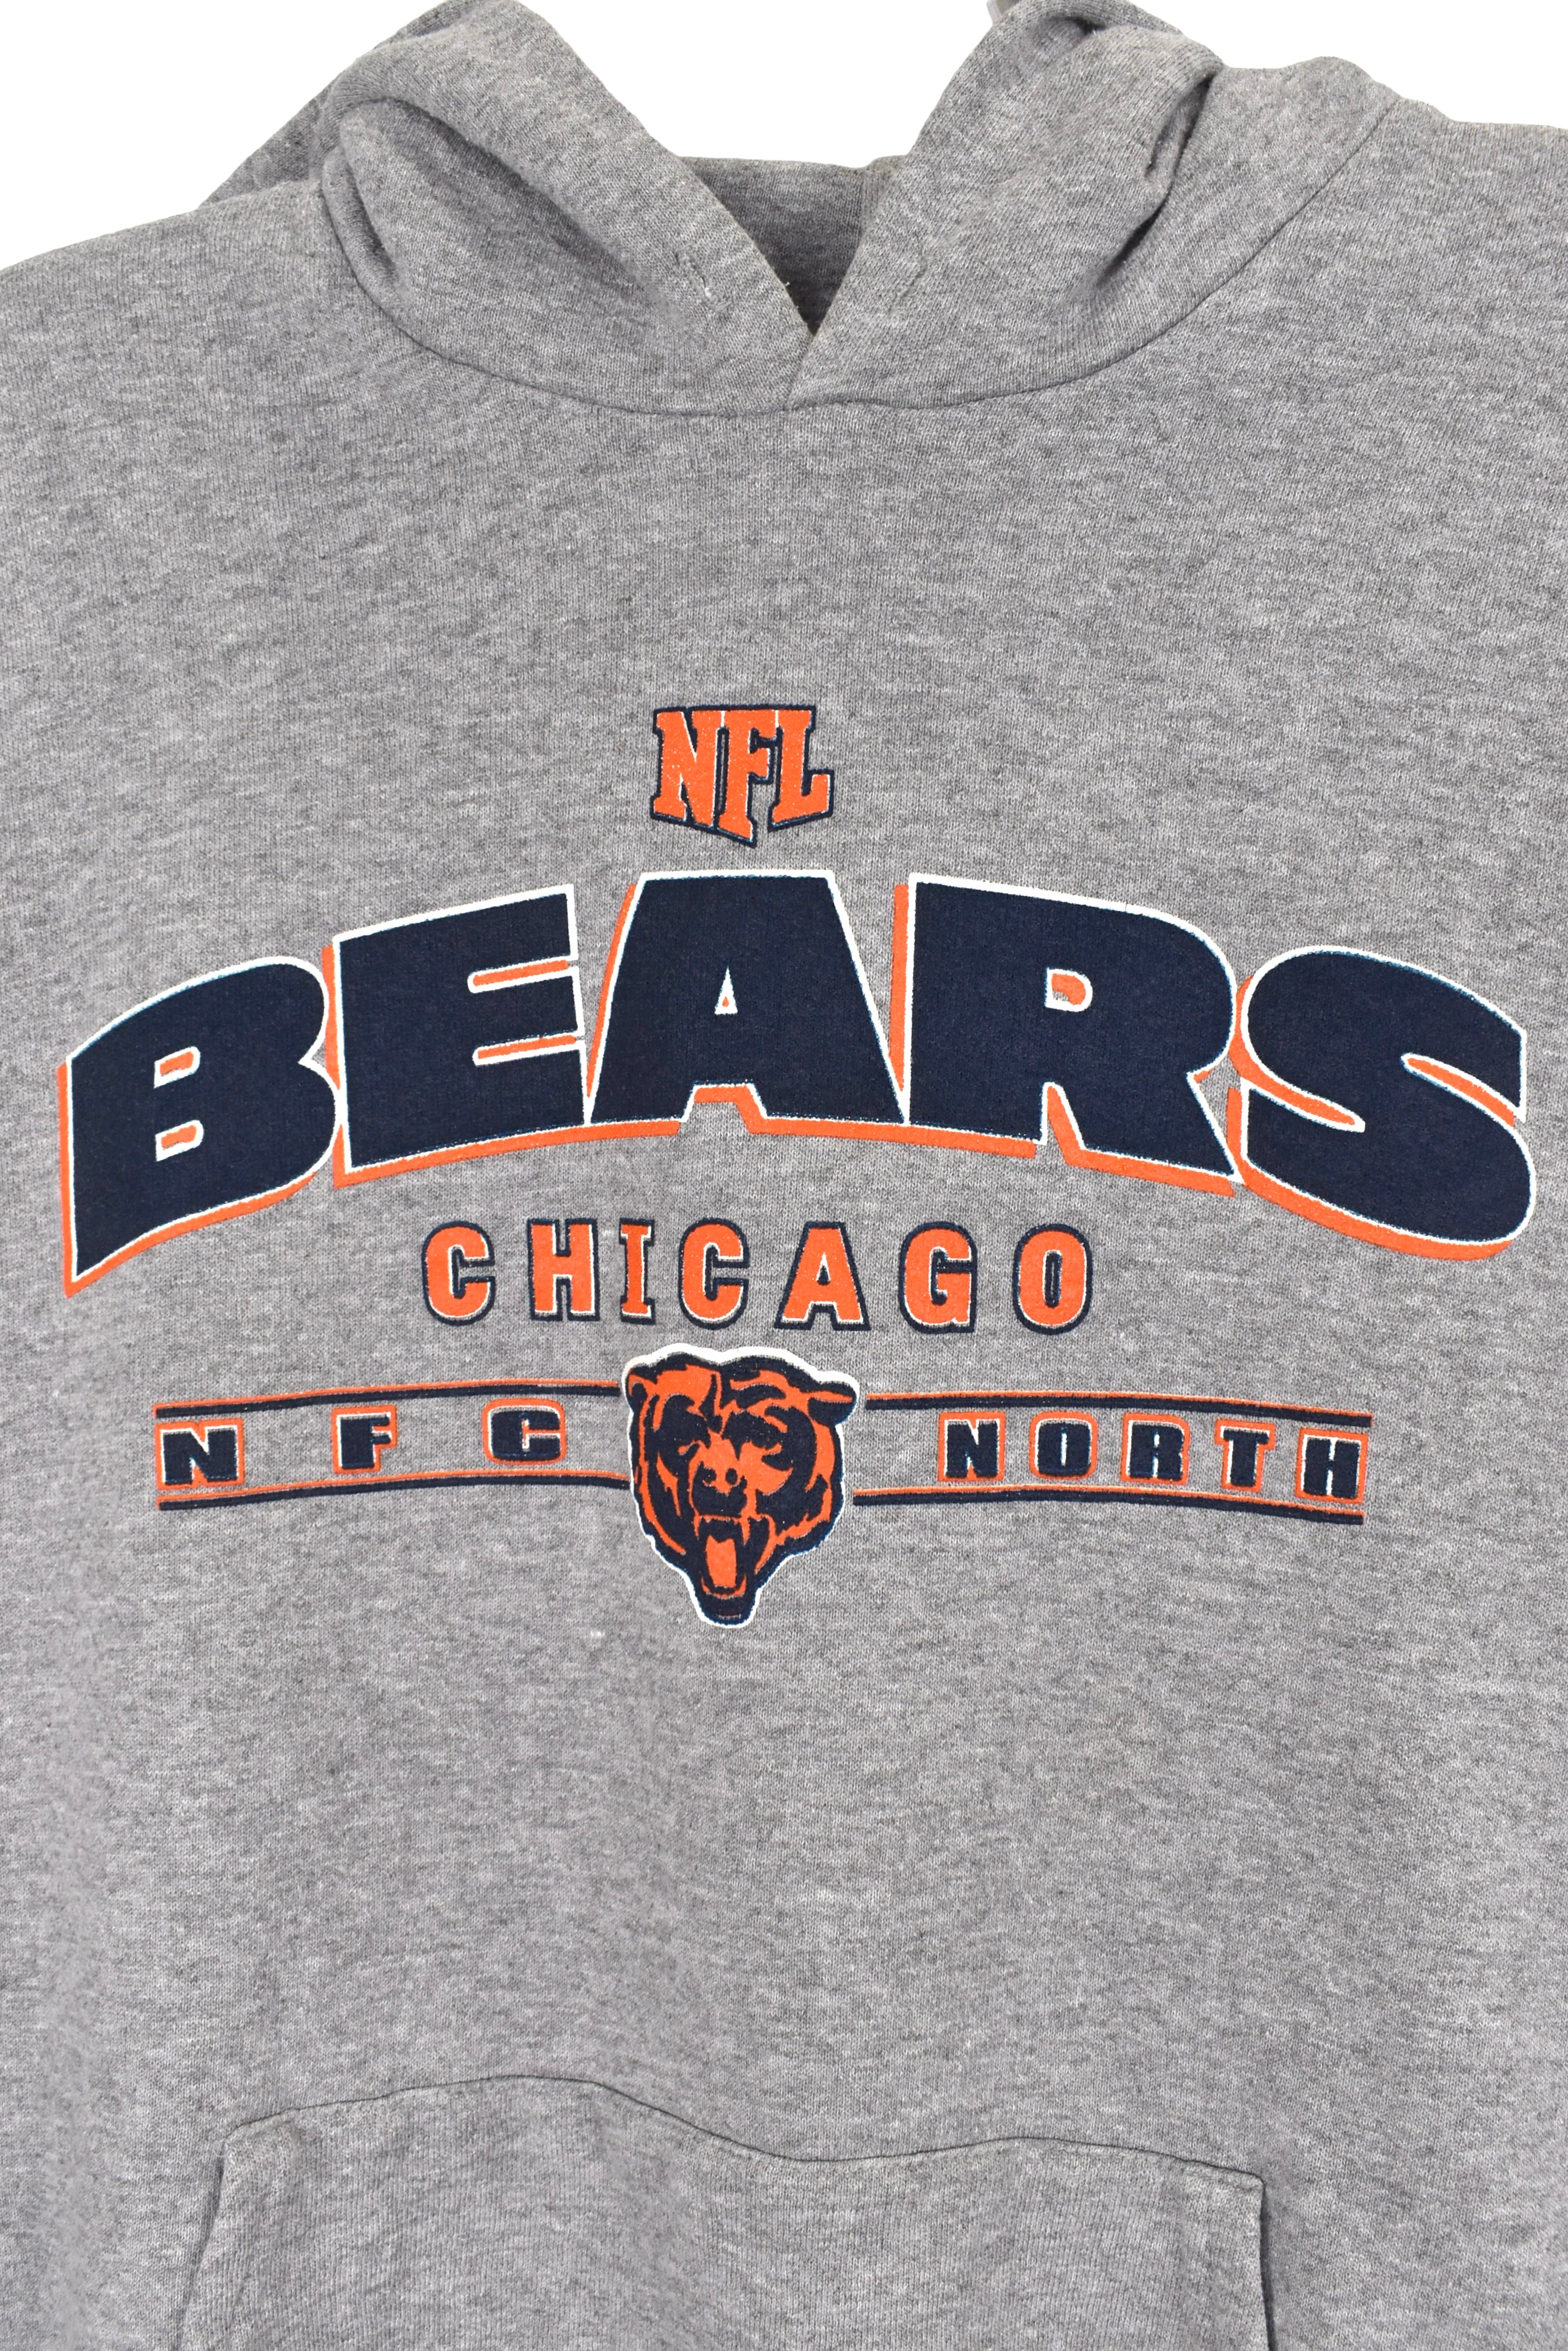 Vintage Chicago Bears hoodie, NFL grey graphic sweatshirt - Large